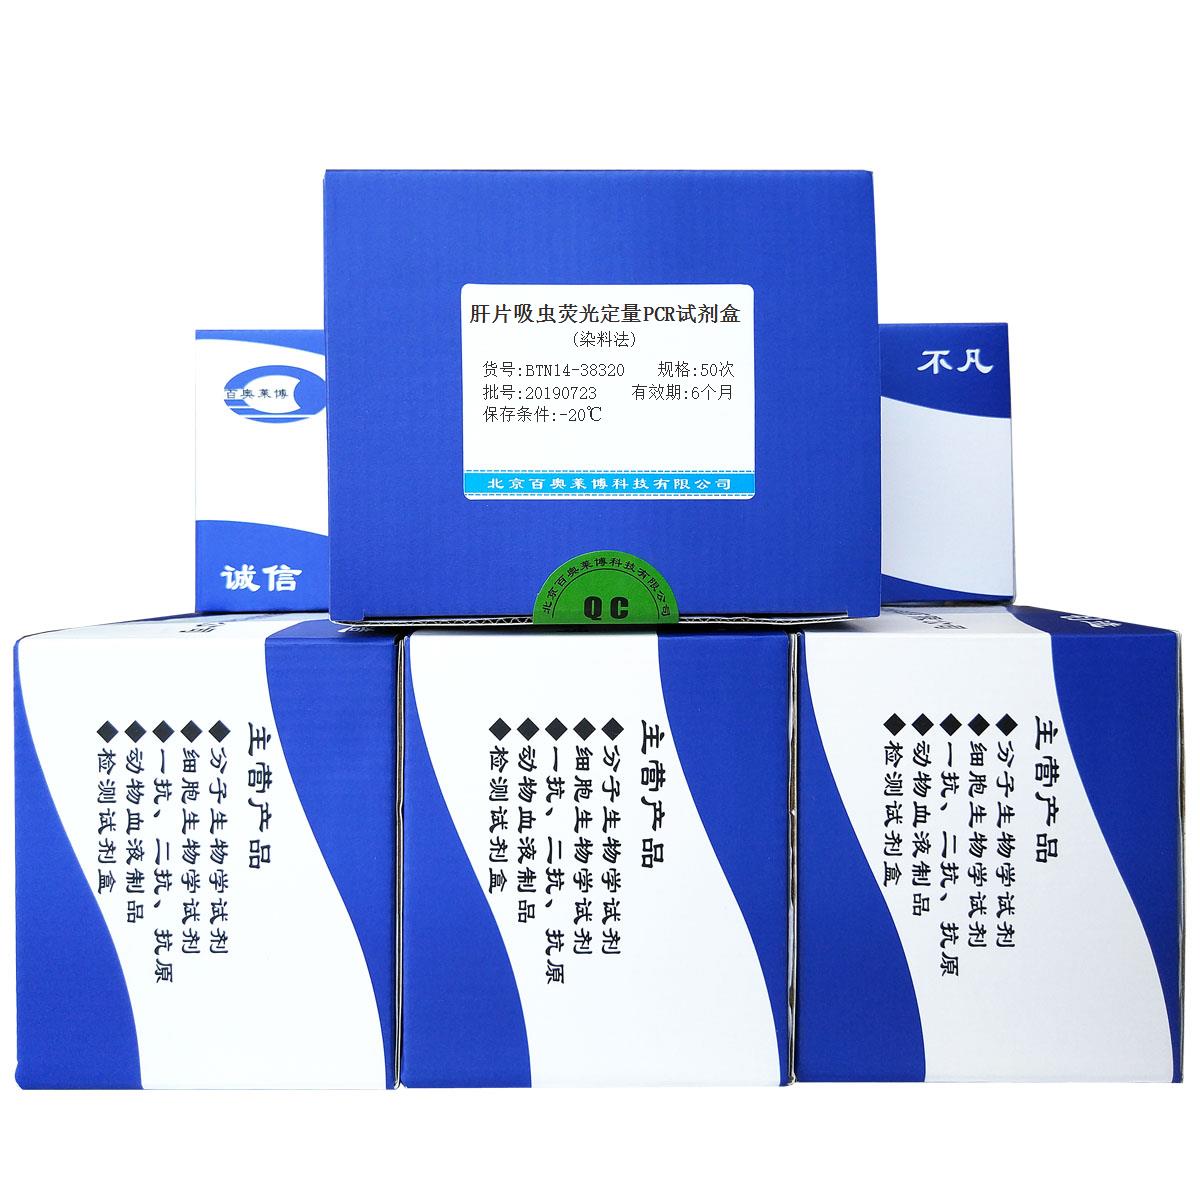 肝片吸虫荧光定量PCR试剂盒(染料法)价格